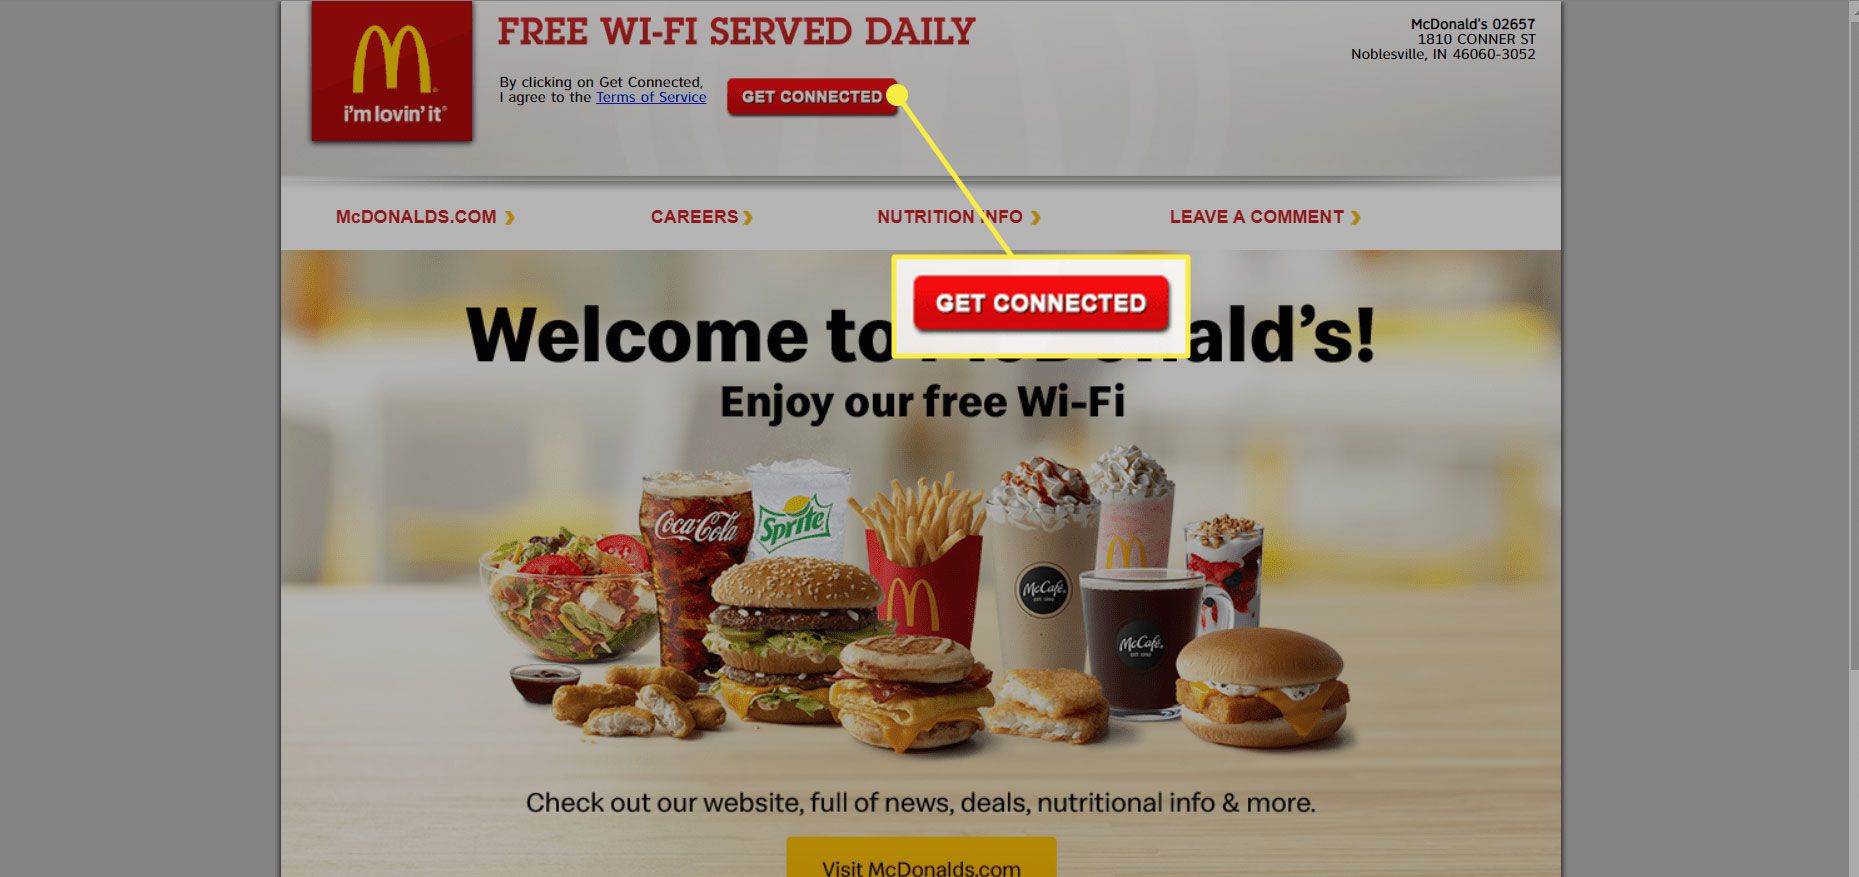 De "Ansluta" på McDonalds Wi-Fi-hemsida